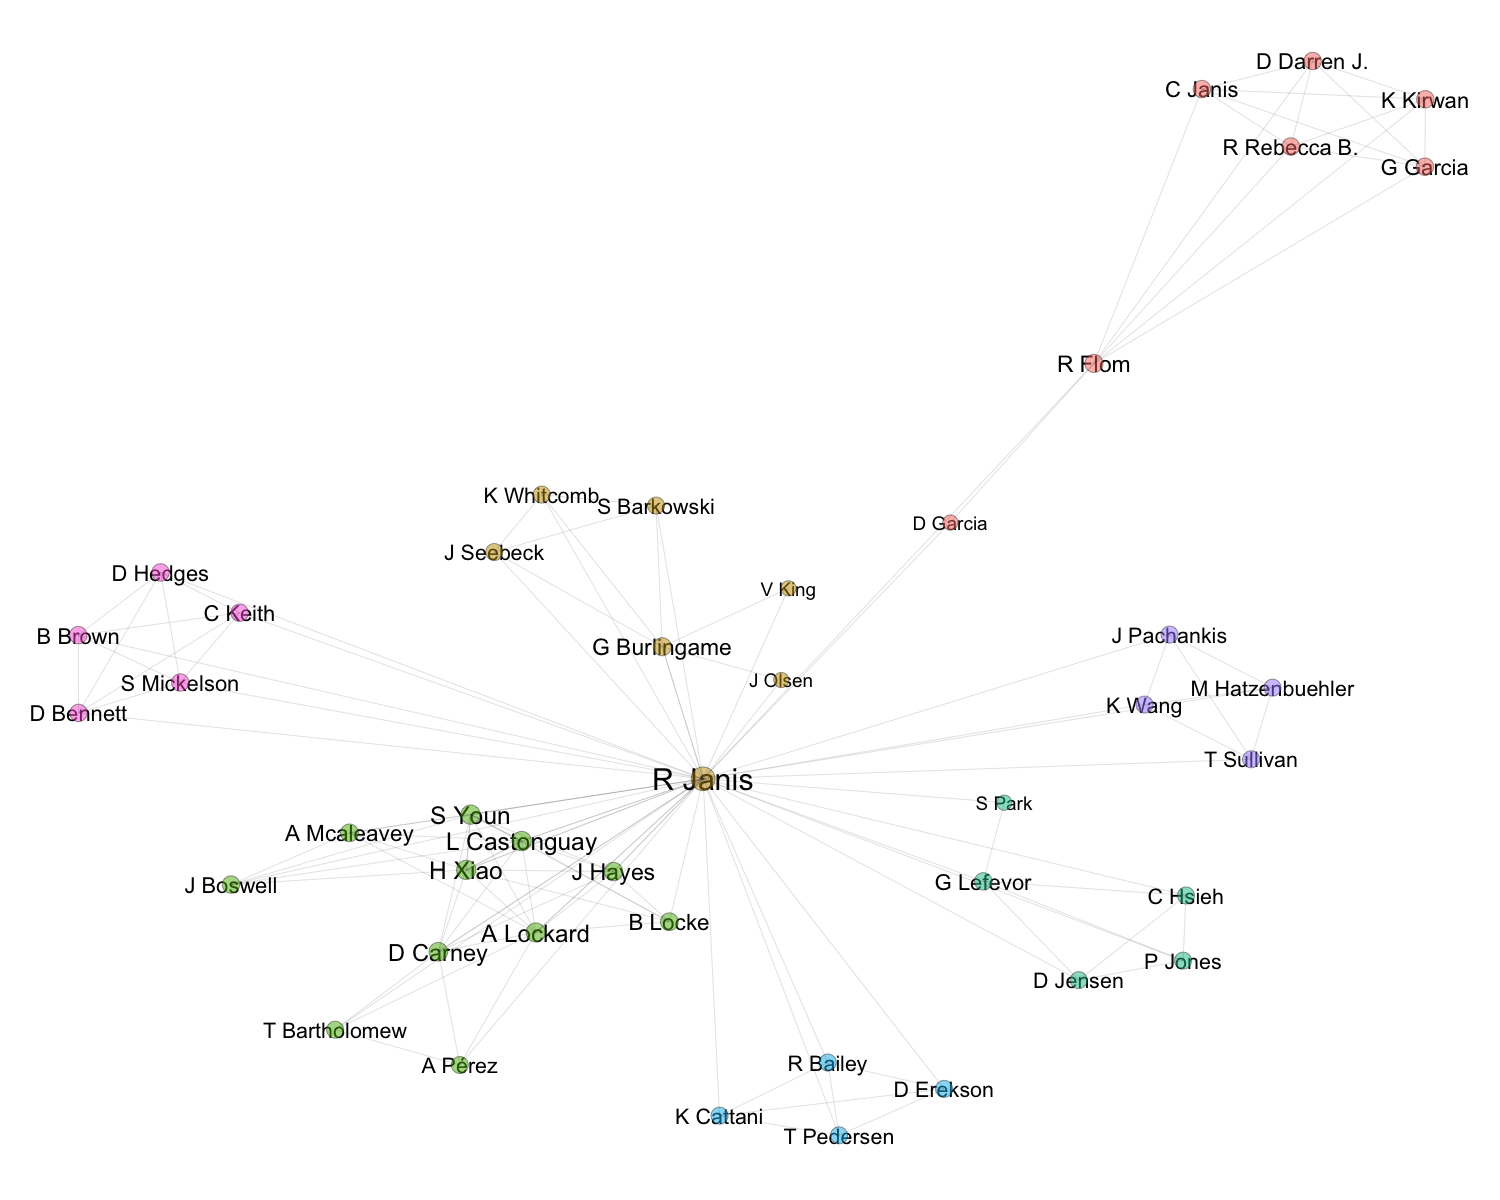 Collaborator Network Graph